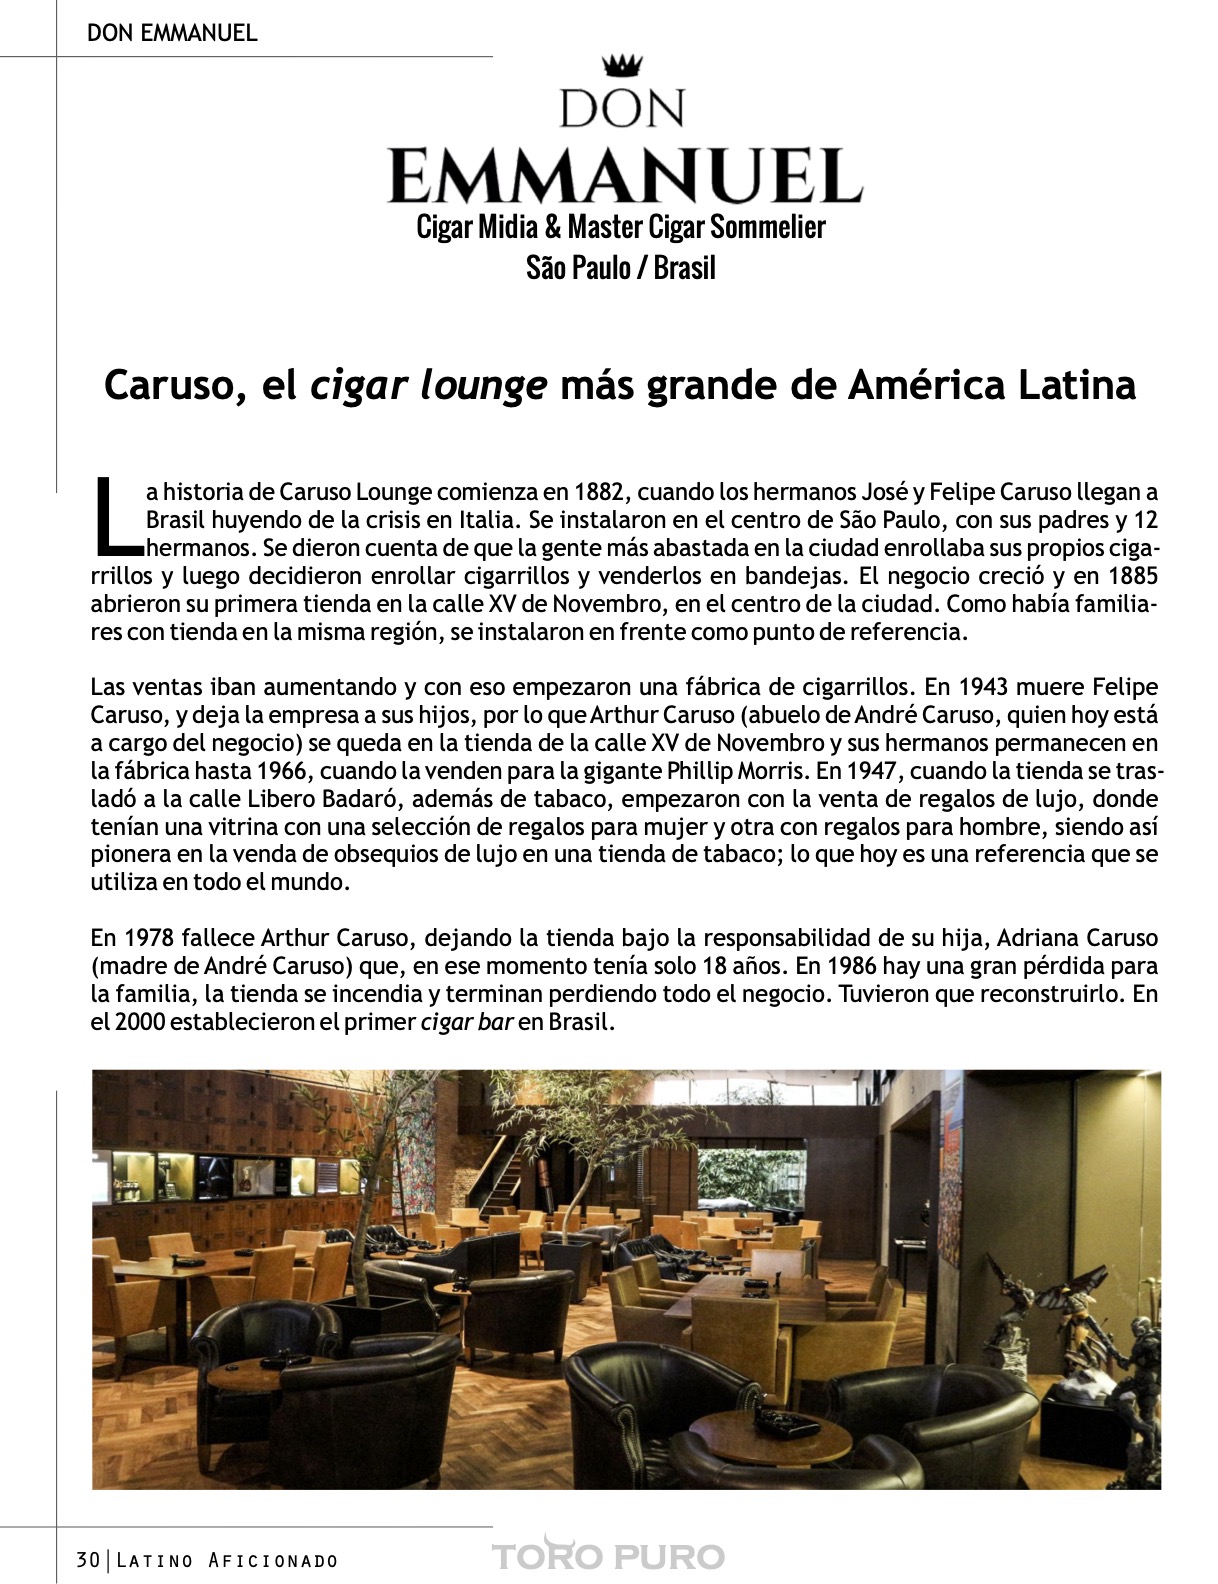 Caruso, el cigar lounge más grande de América Latina